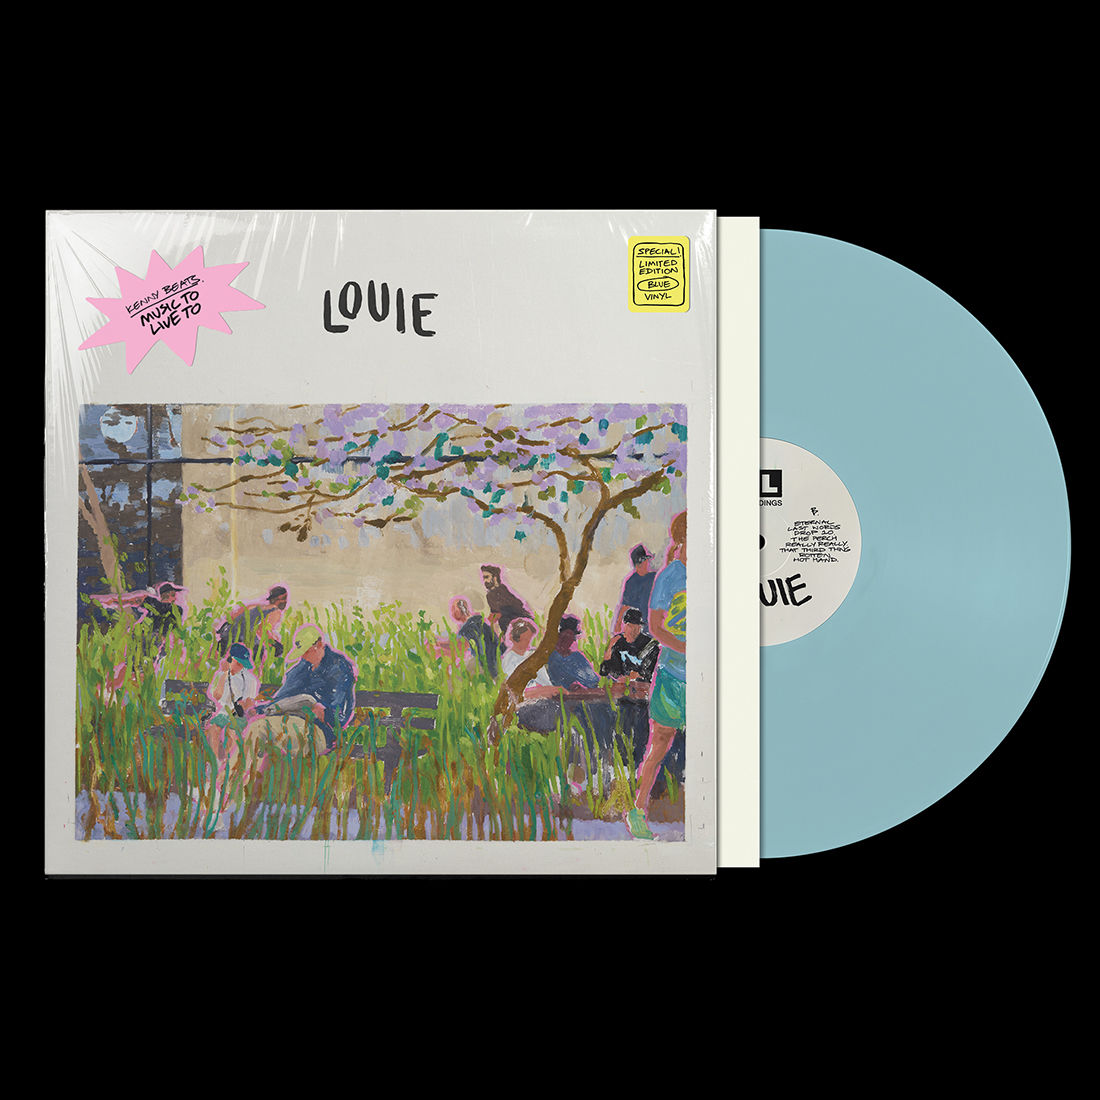 LOUIE: Limited Edition Blue Vinyl LP